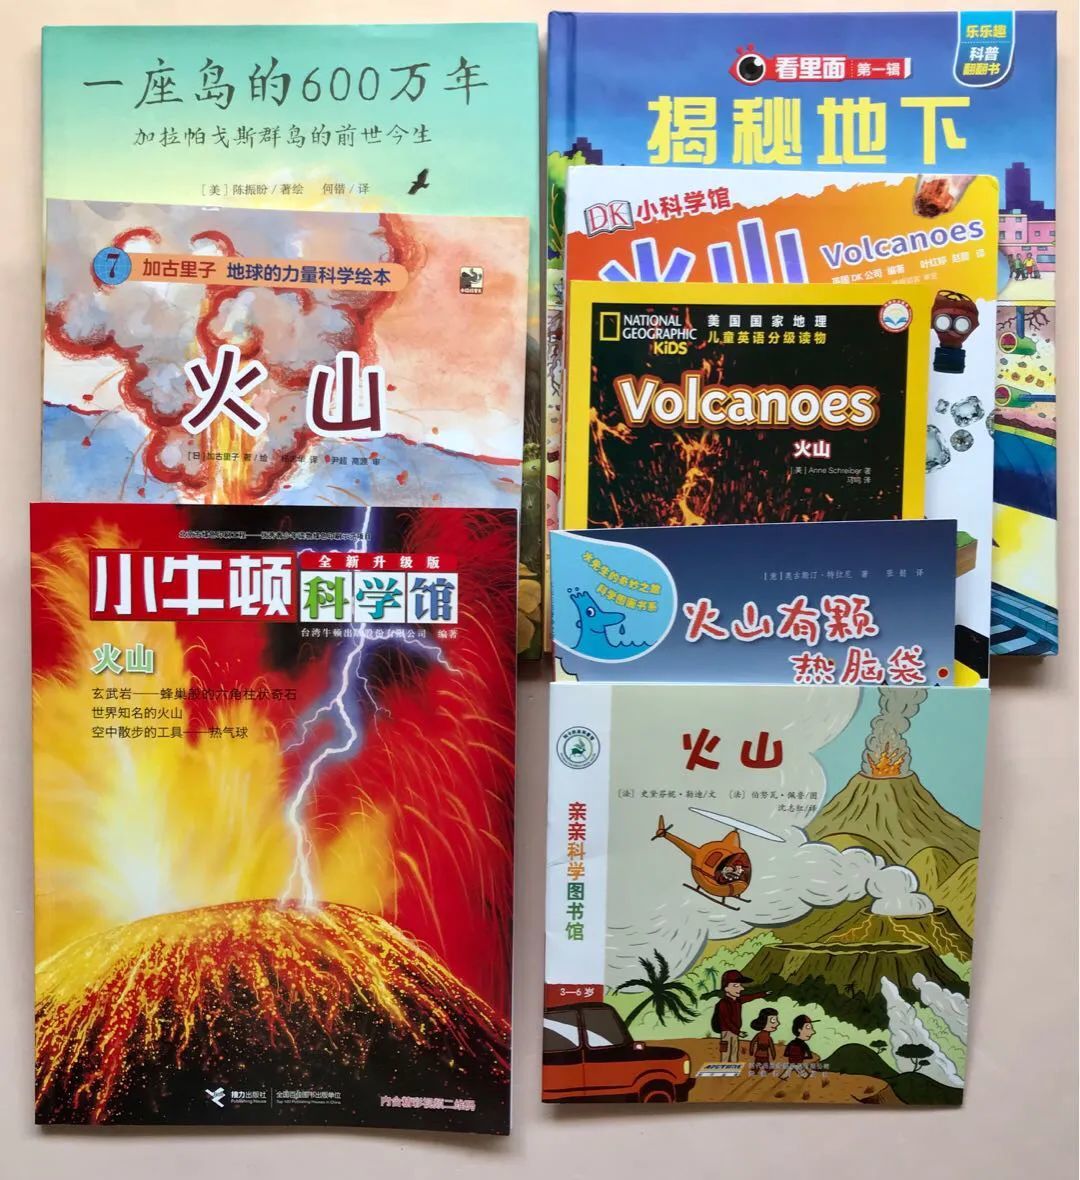 #阅读的乐趣远不止泛读# 最近我们开始玩的主题式阅读—火山